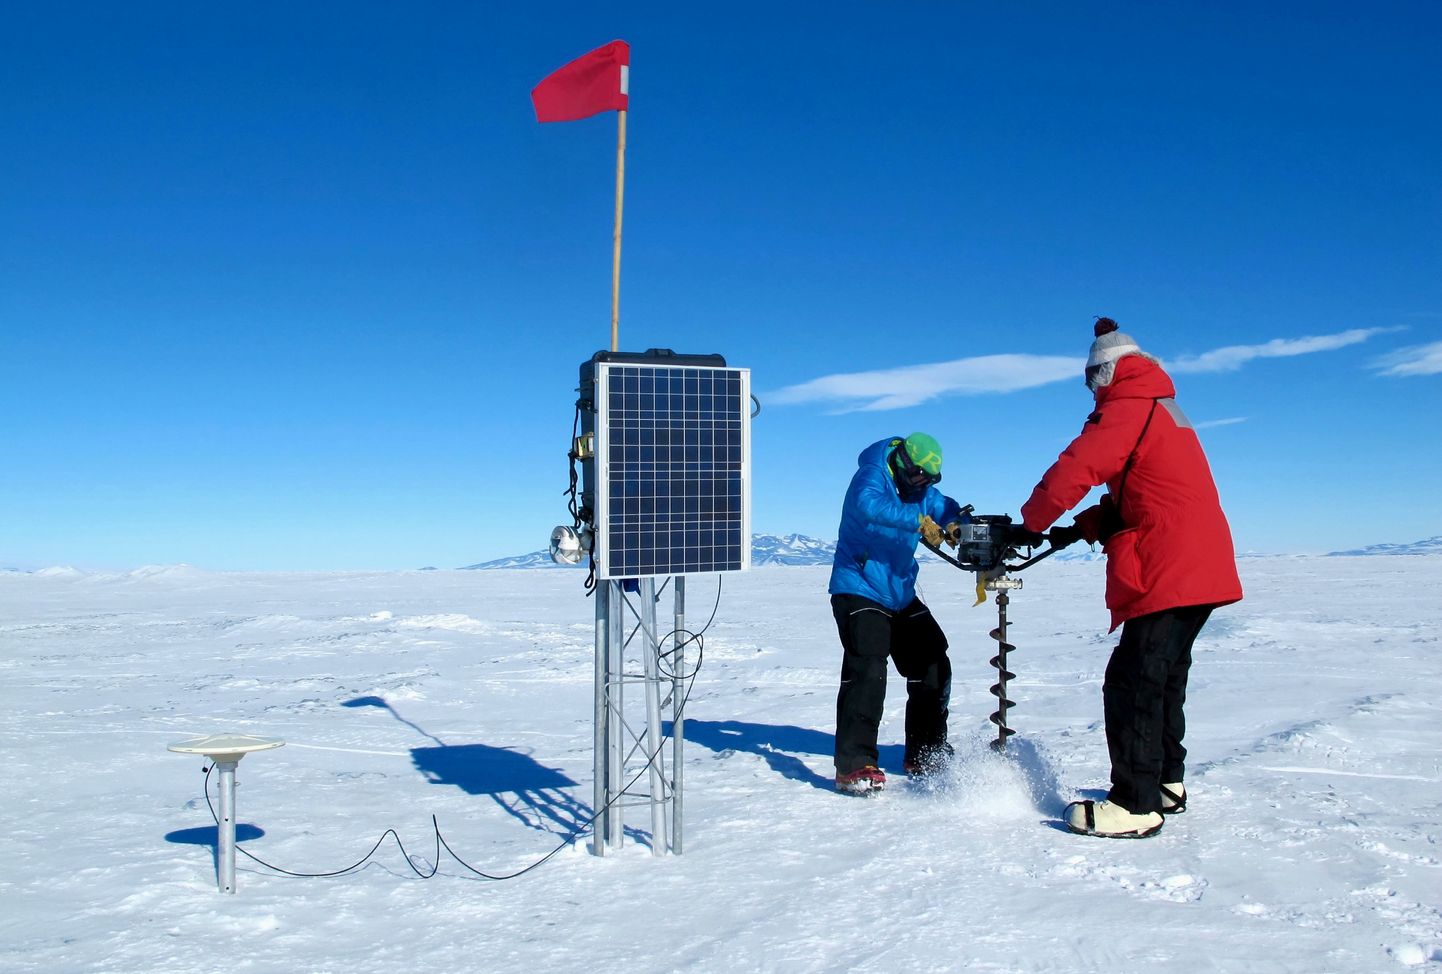 Briti teadlased puurimas Antarktikas USA McMurdo polaarjaama juures uuringuteks jääd. Pilt on illustreeriv